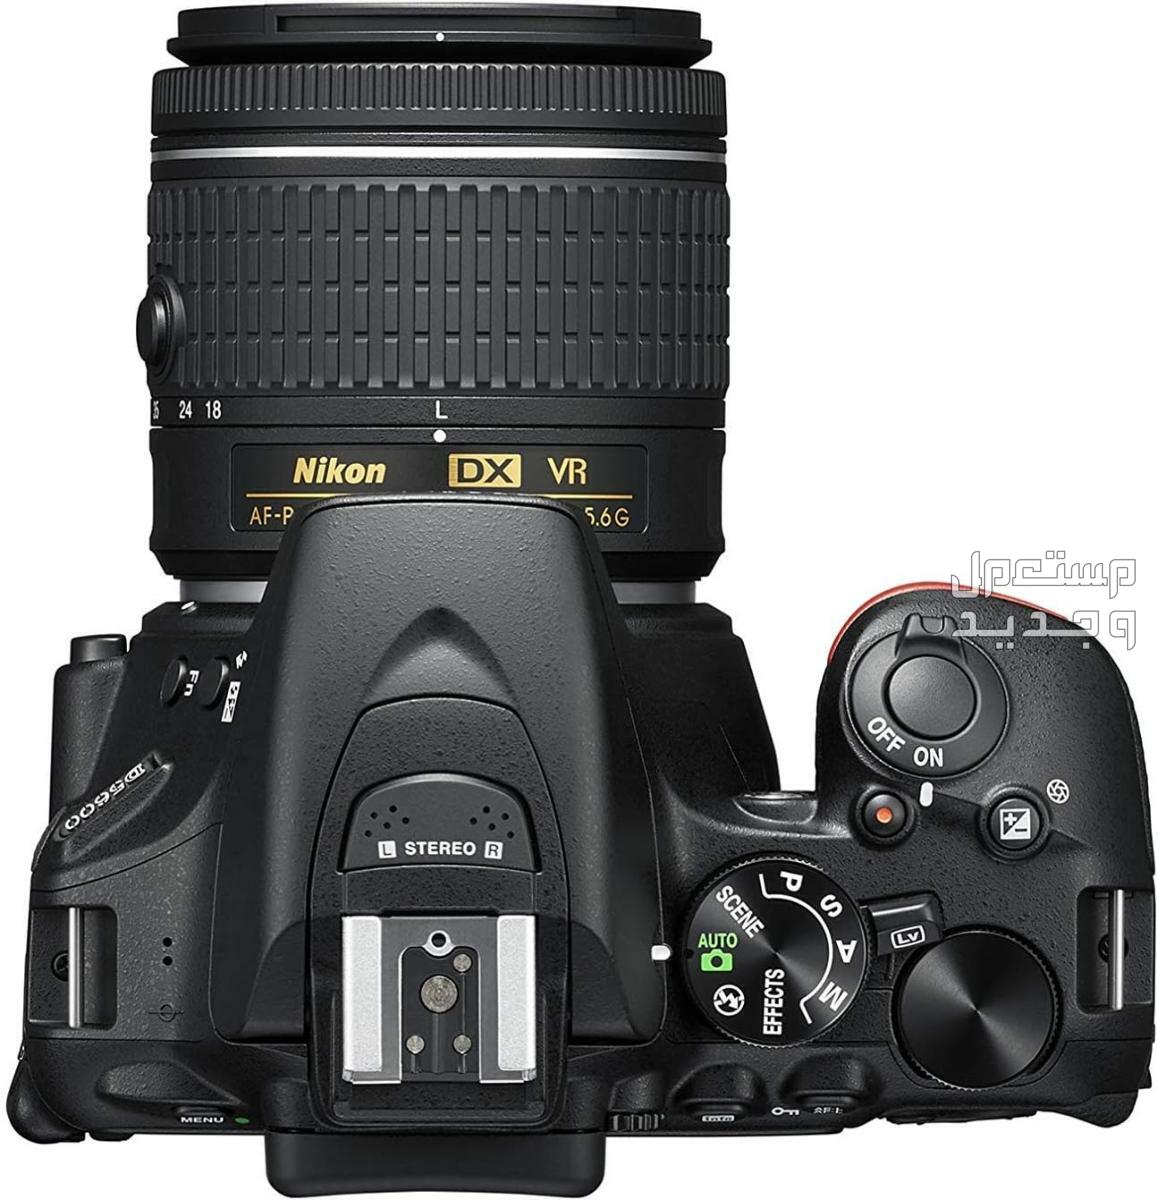 10 كاميرات تصوير ماركات عالمية بأسعار رخيصة في فلسطين مميزات كاميرا Nikon D5600